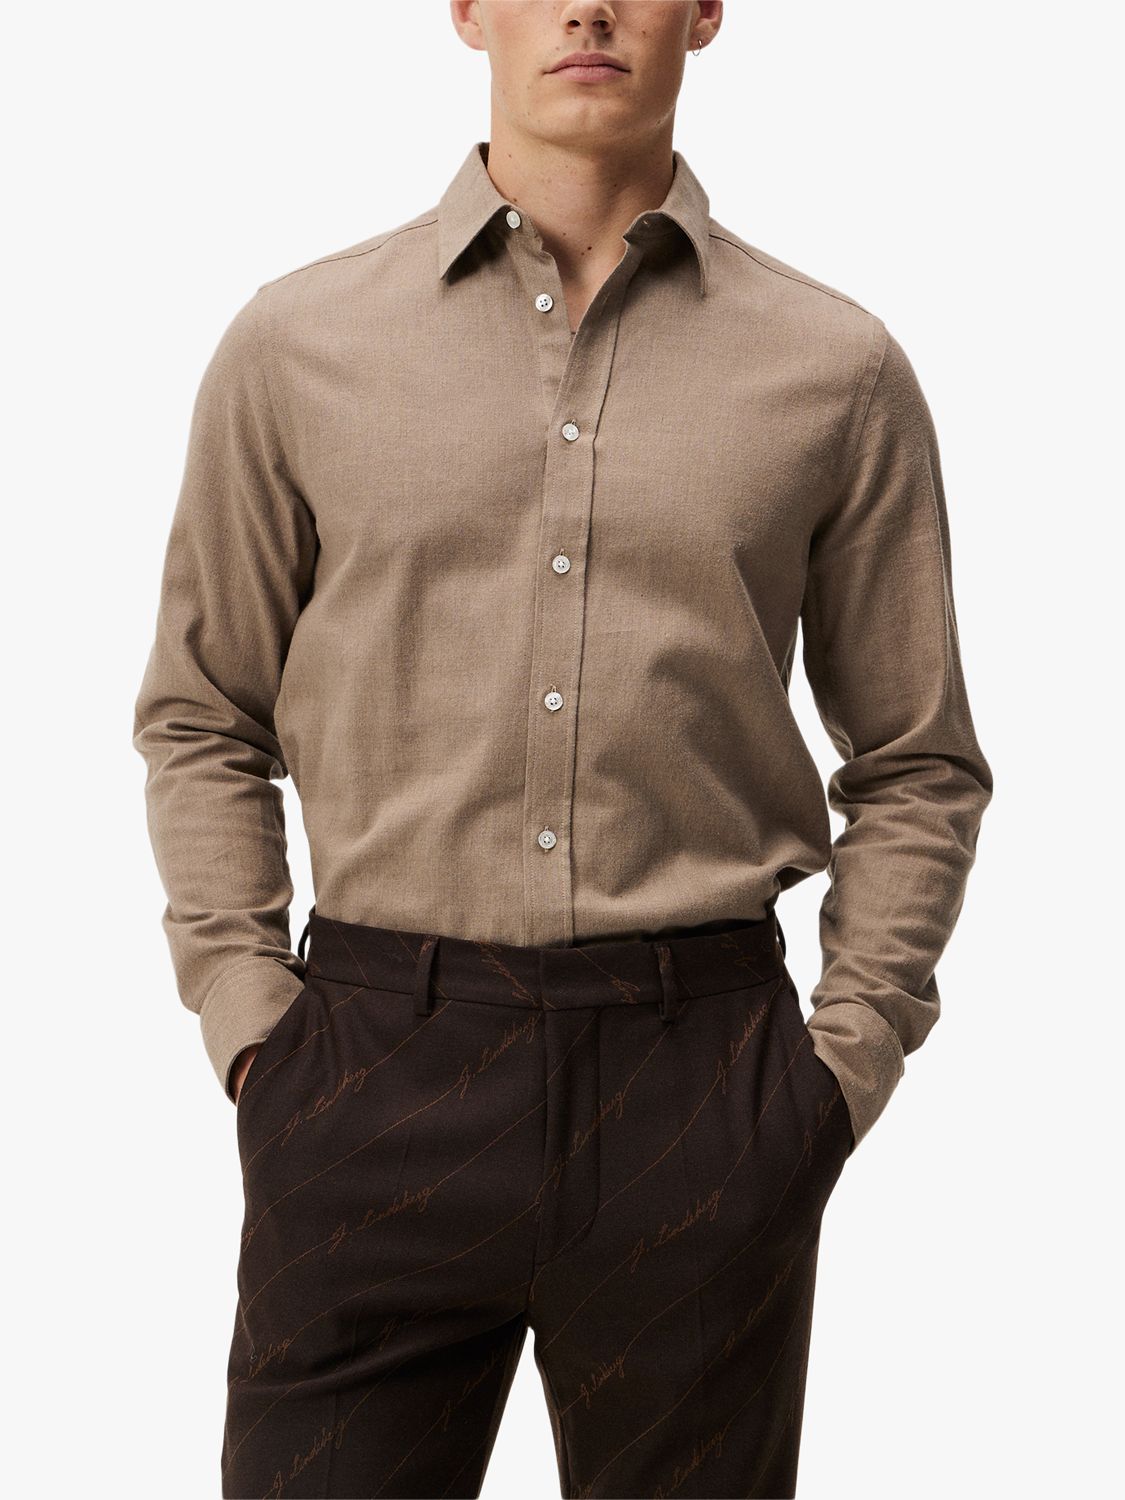 J.Lindeberg Light Flannel Slim Shirt, Brown, L